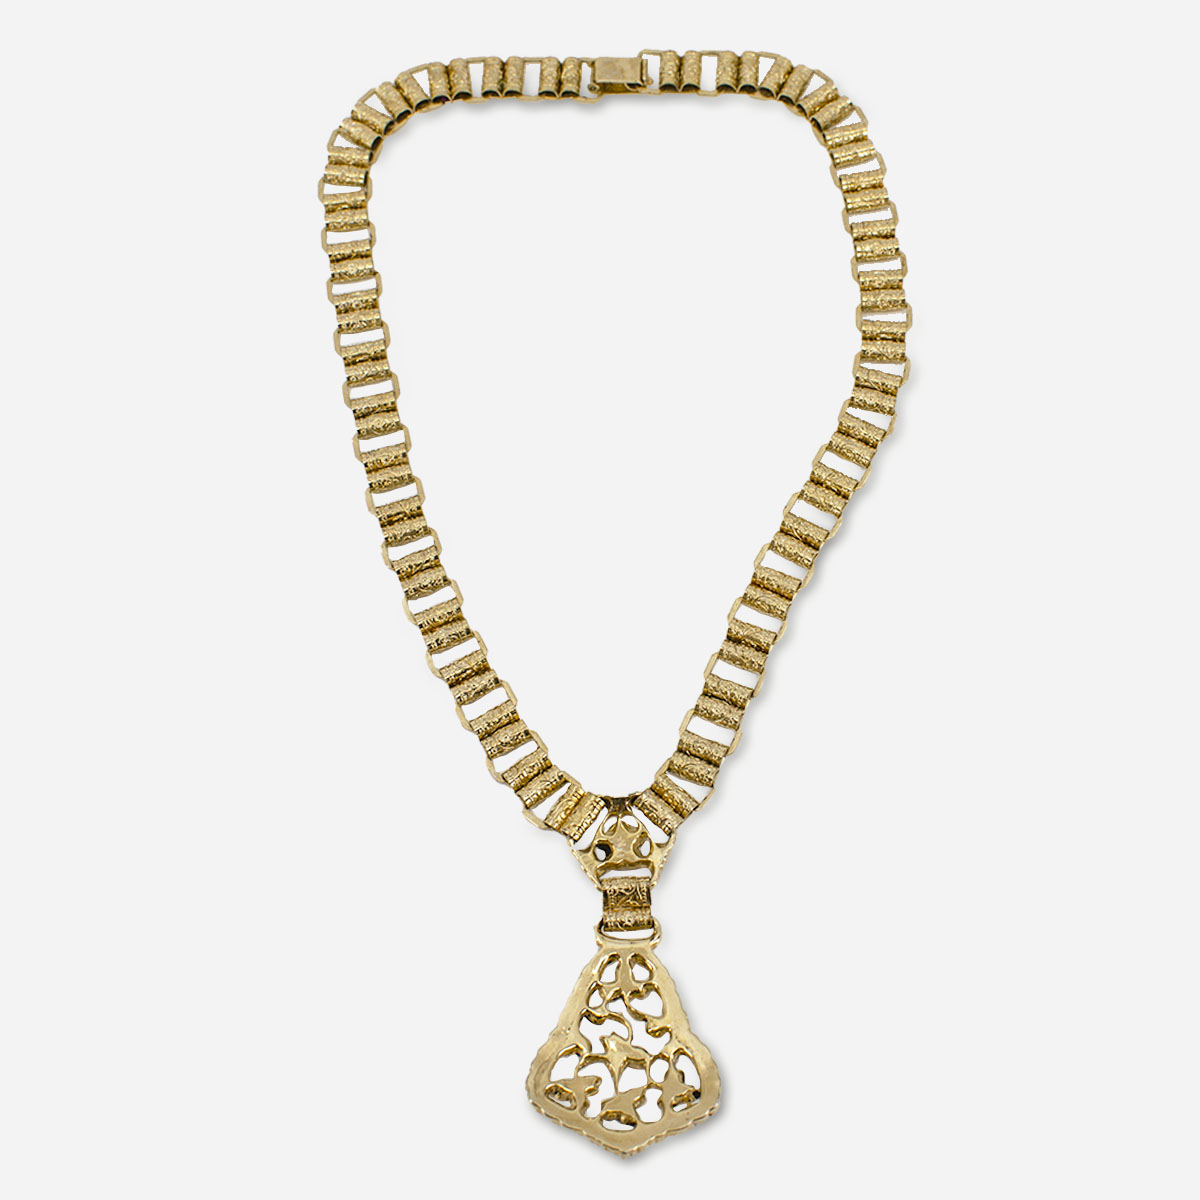 Vintage gold chain necklace copy